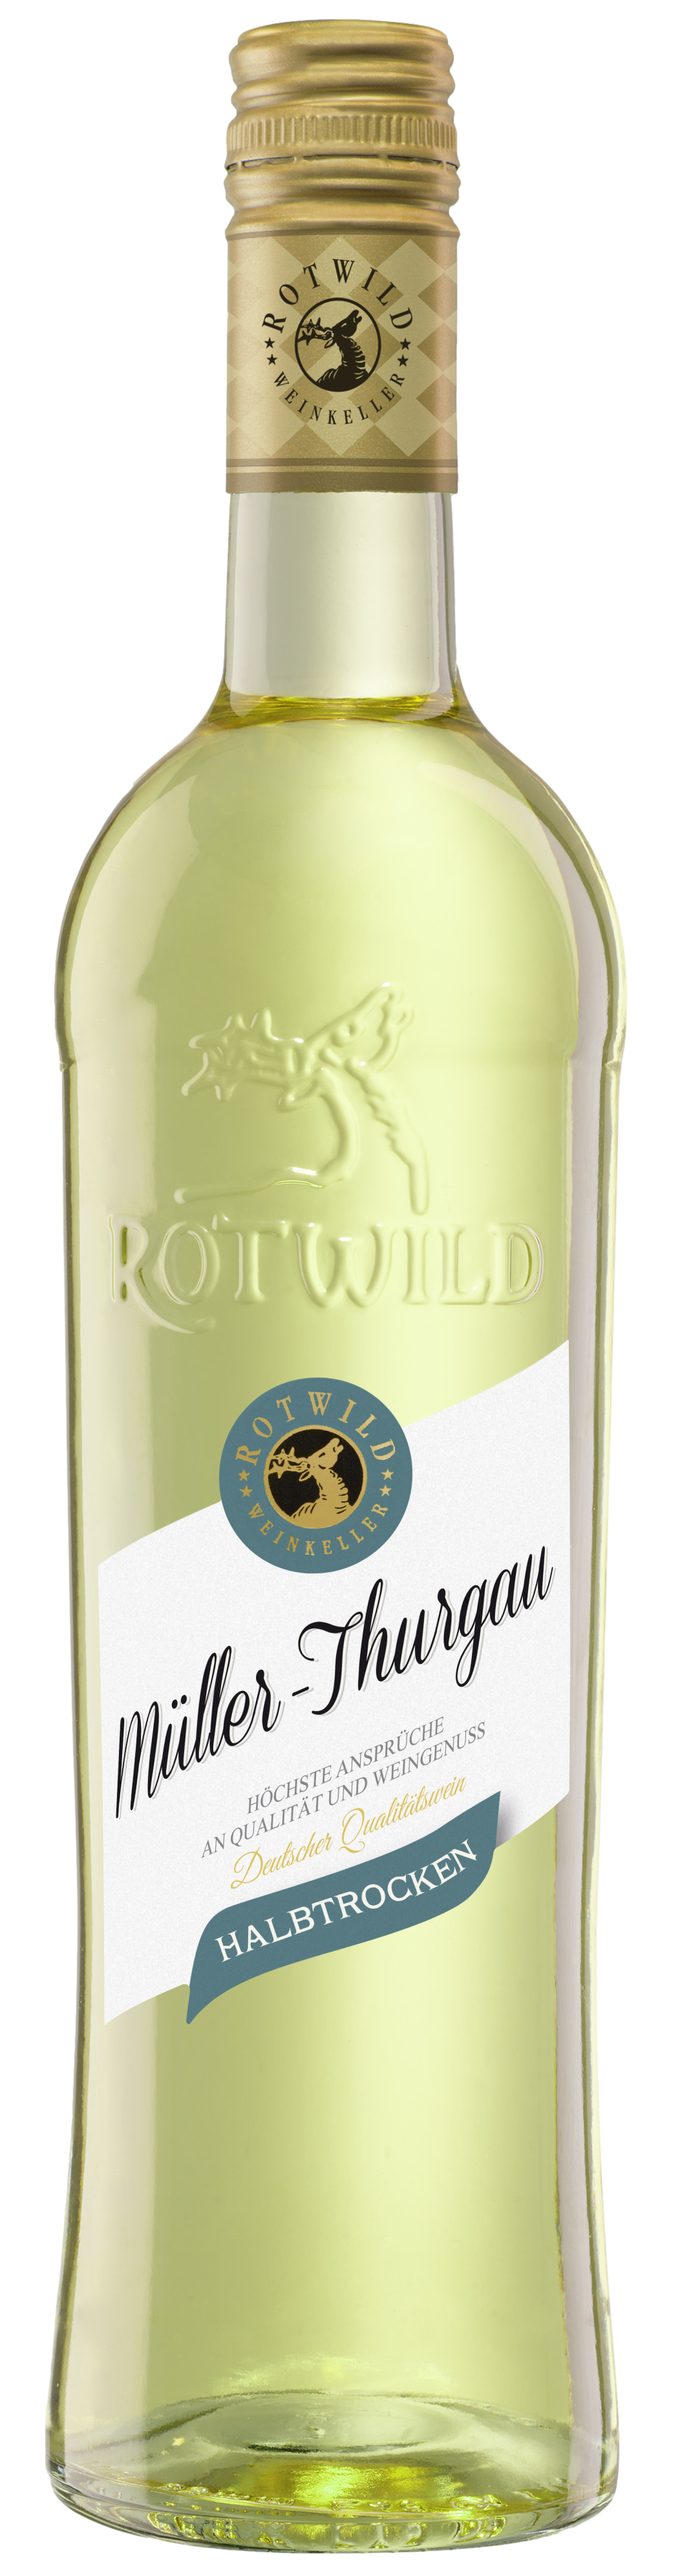 Rotwild Weißwein Probierpaket (6 x 0,75l) + VINOX Winecards